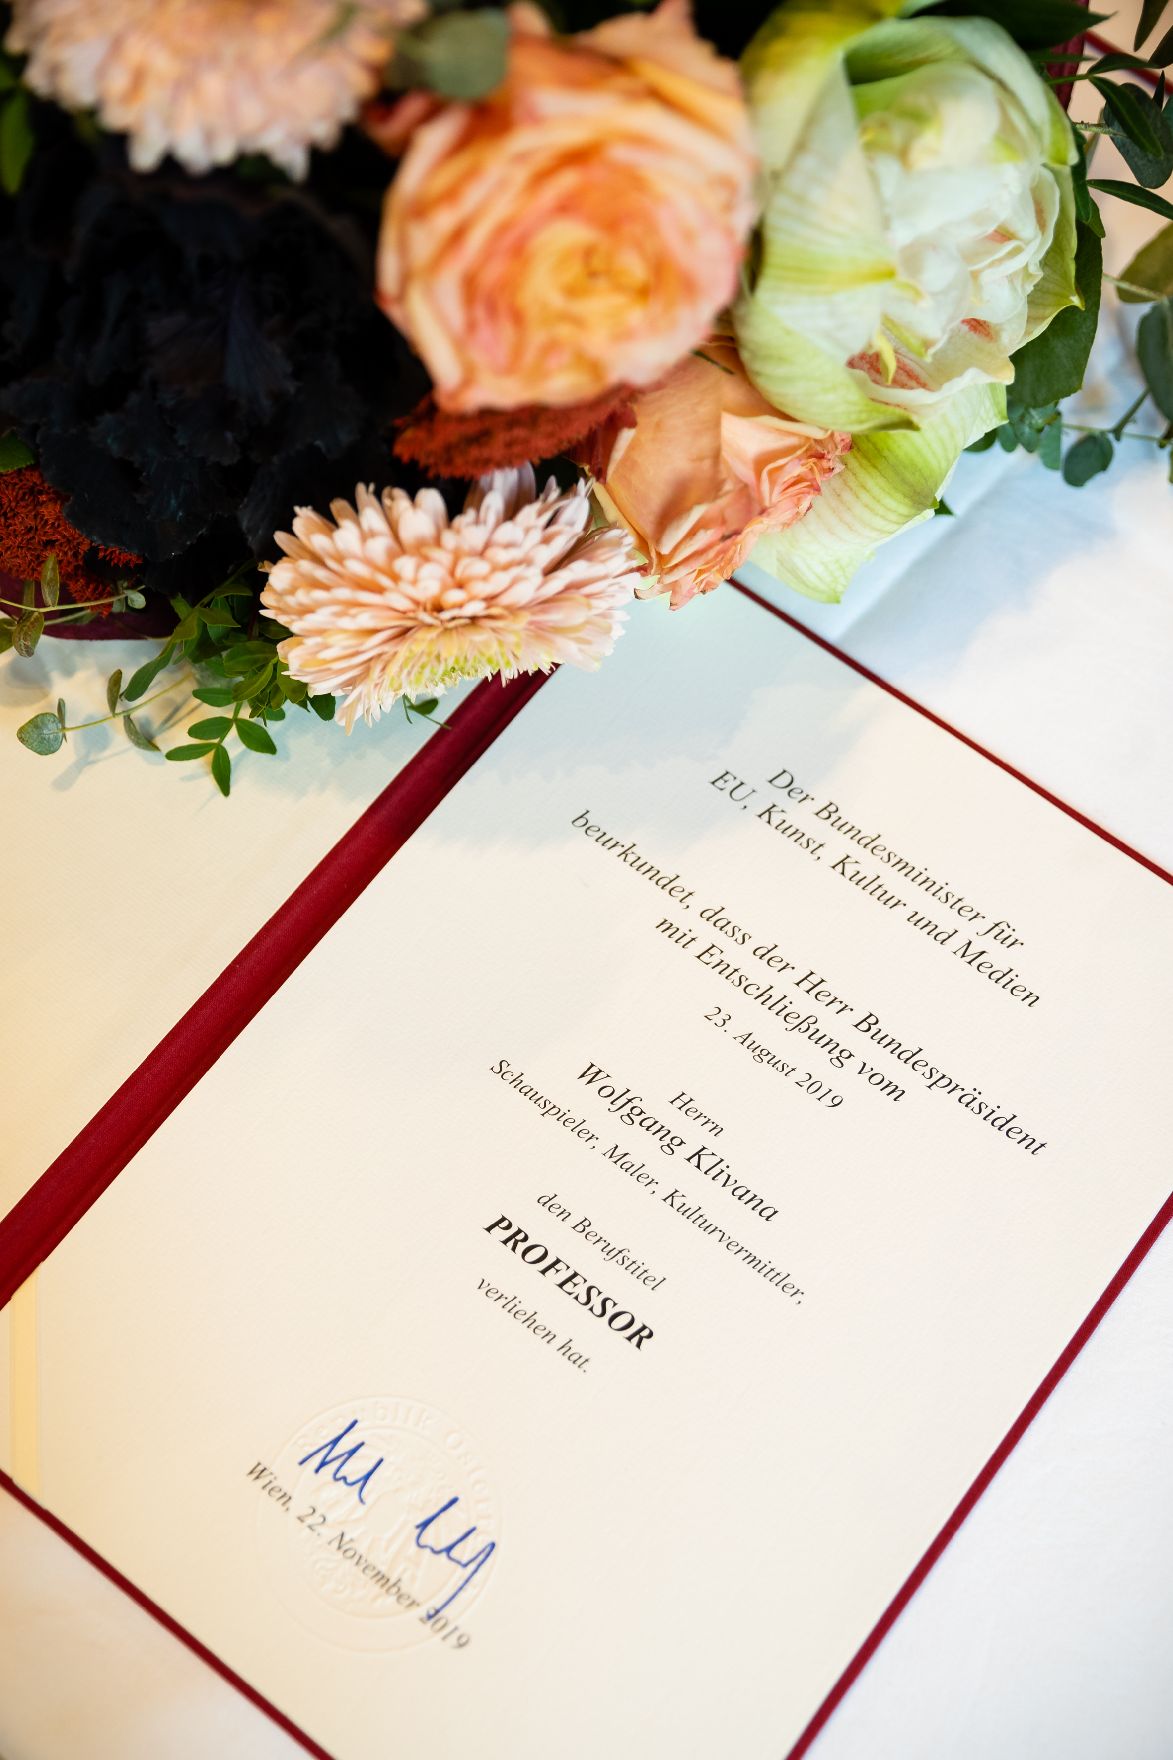 Am 22. November 2019 überreichte Sektionschef Jürgen Meindl das Goldene Ehrenzeichen für Verdienste um die Republik Österreich an Erich Martin Wolf und die Urkunde, mit der Wolfgang Klivana der Berufstitel Professor verliehen wurde.